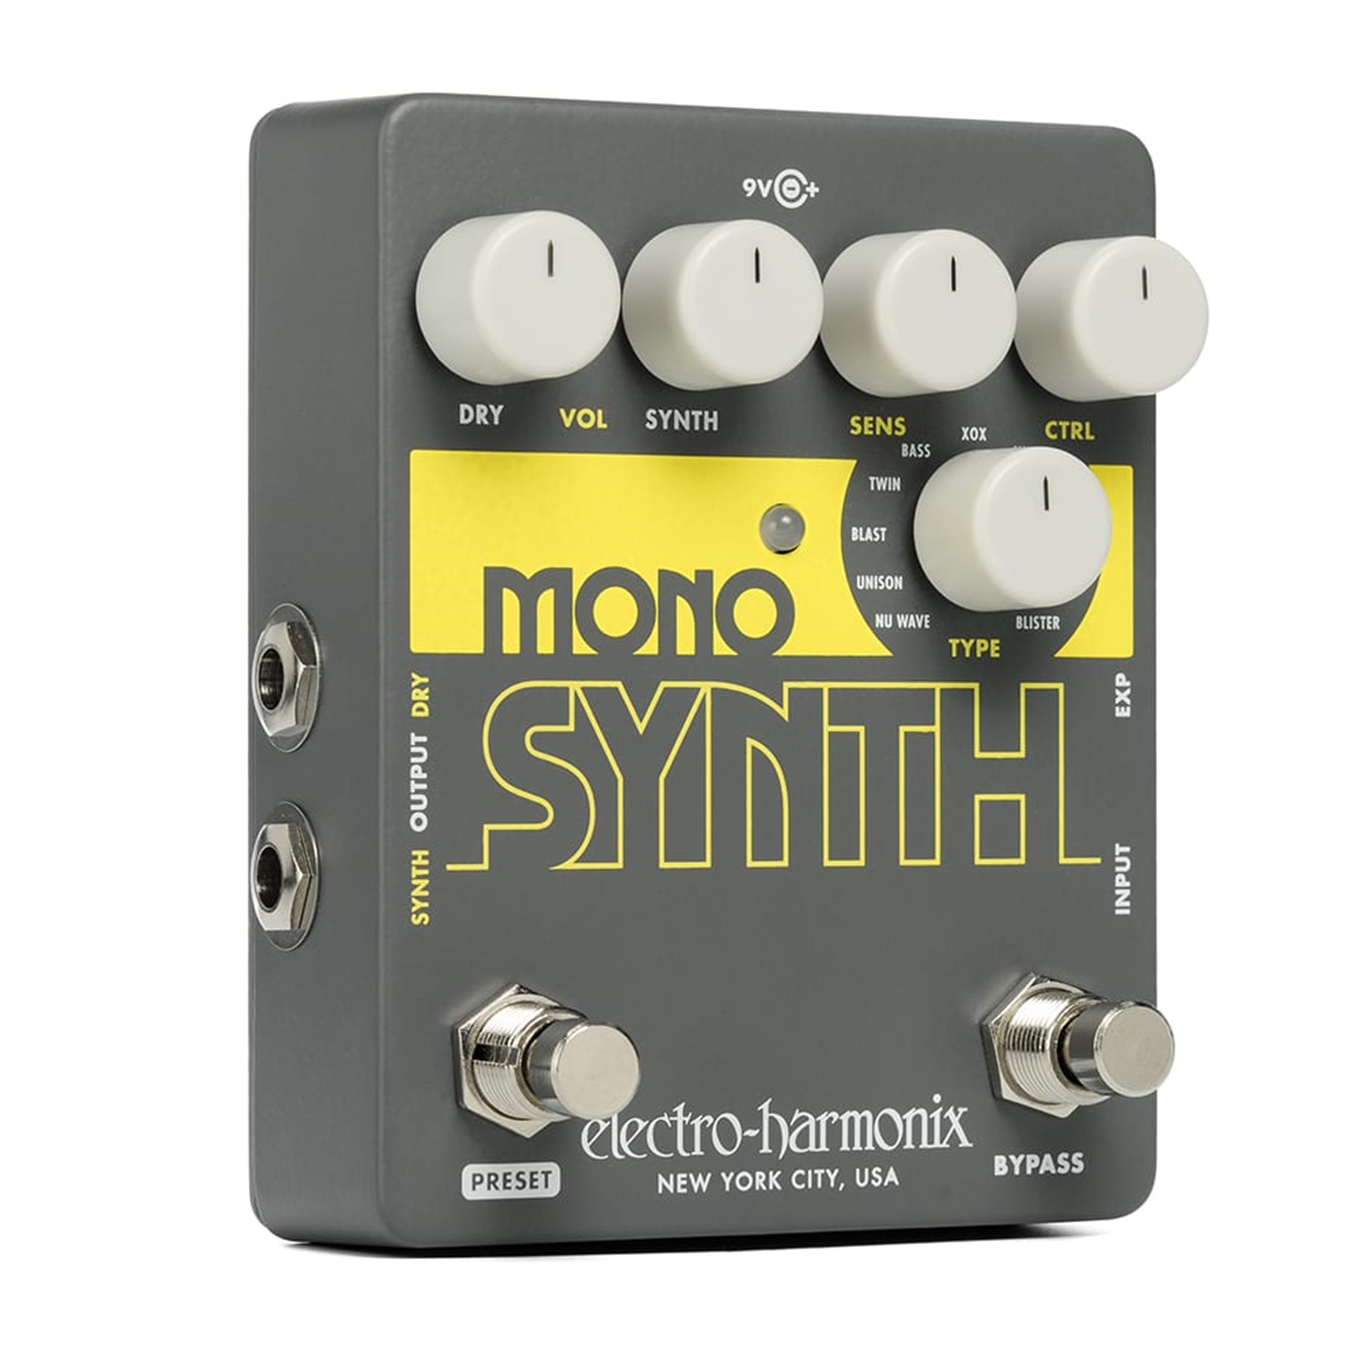 ELECTRO-HARMONIX Mono Synth Guitar Synthesizer Pedal